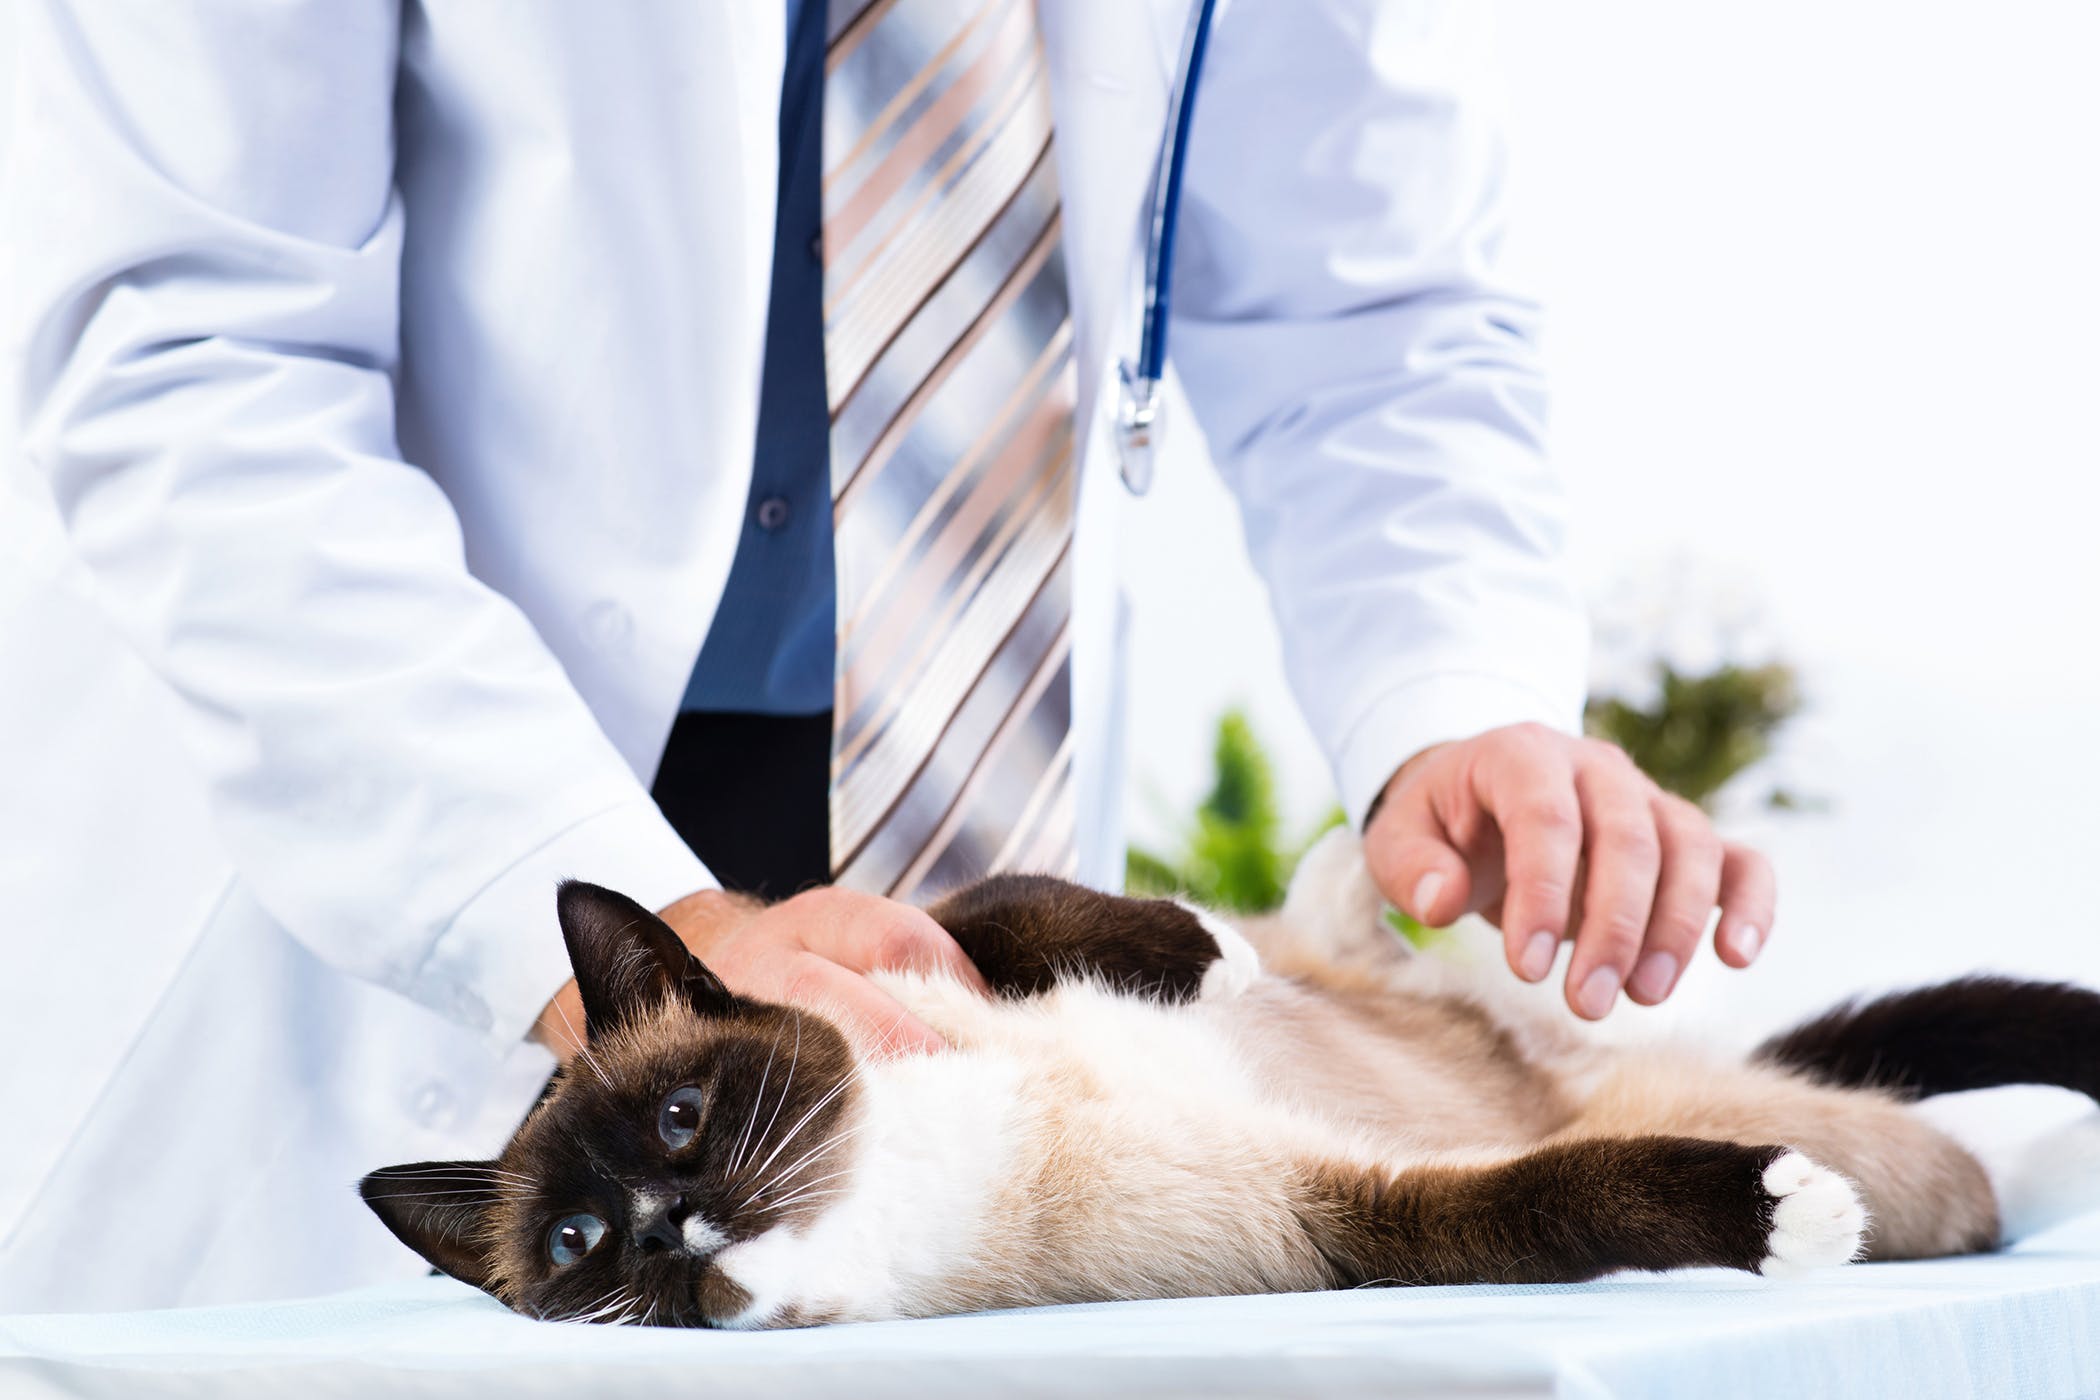 Болезни почек у кошек: симптомы и лечение